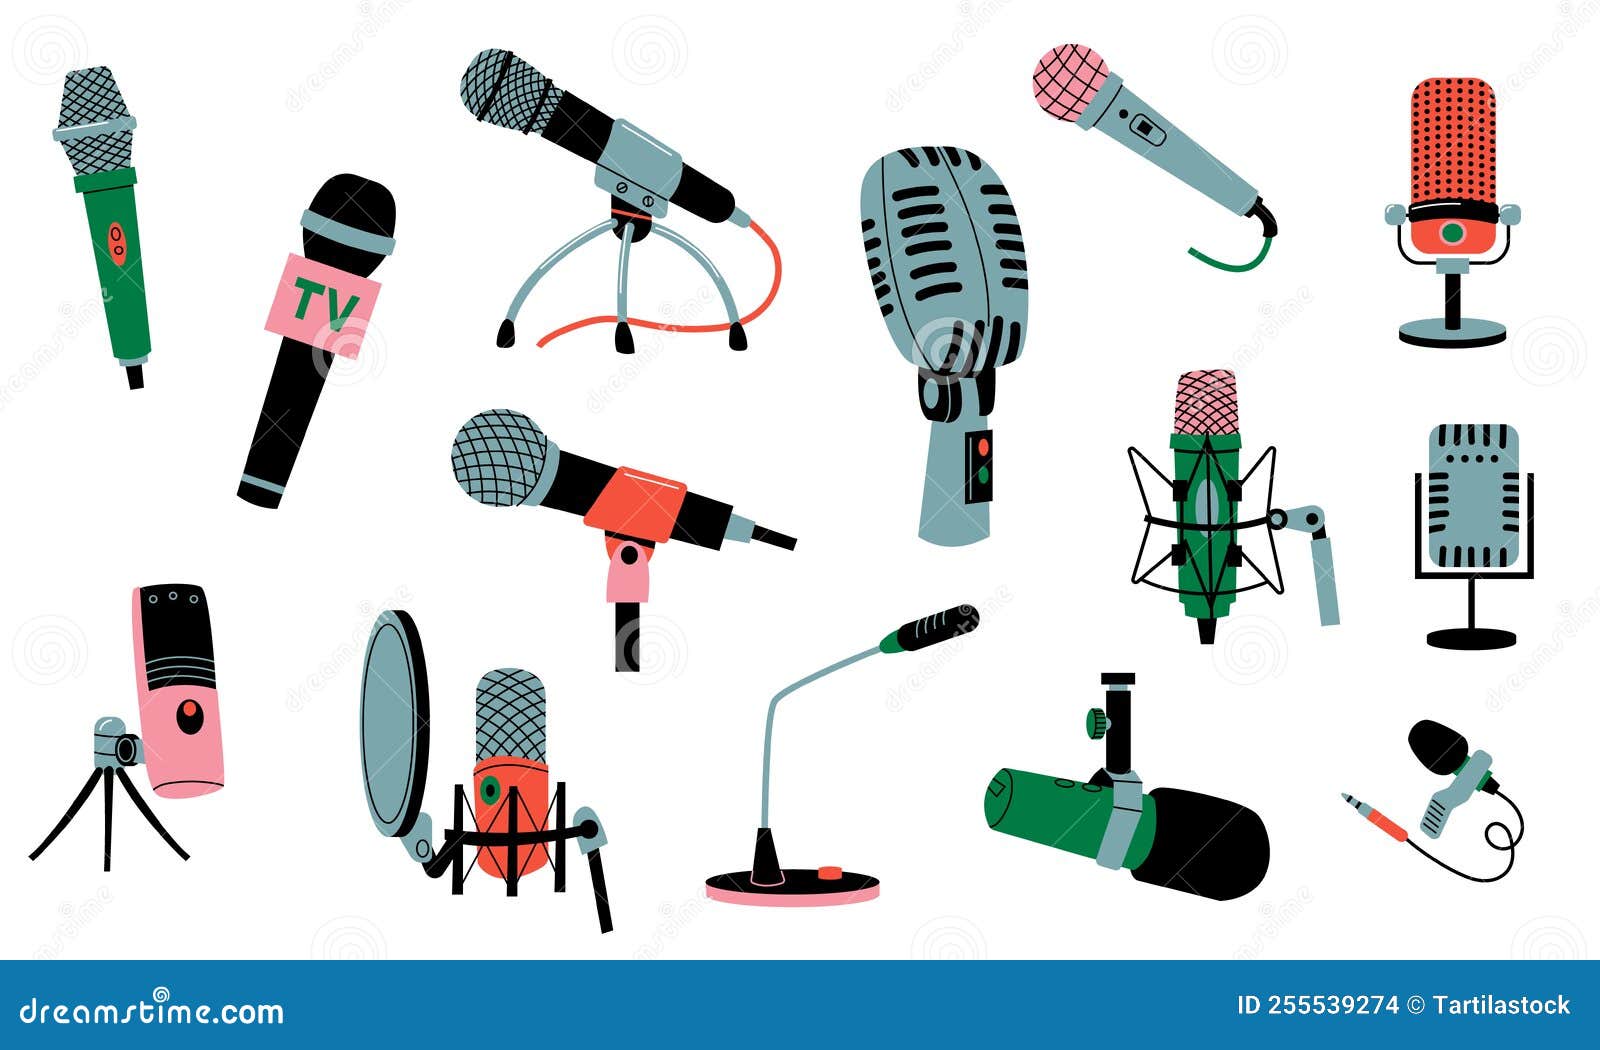 Microphone 3d Pour Musique Radio Ou Karaoké. équipement Audio Pour